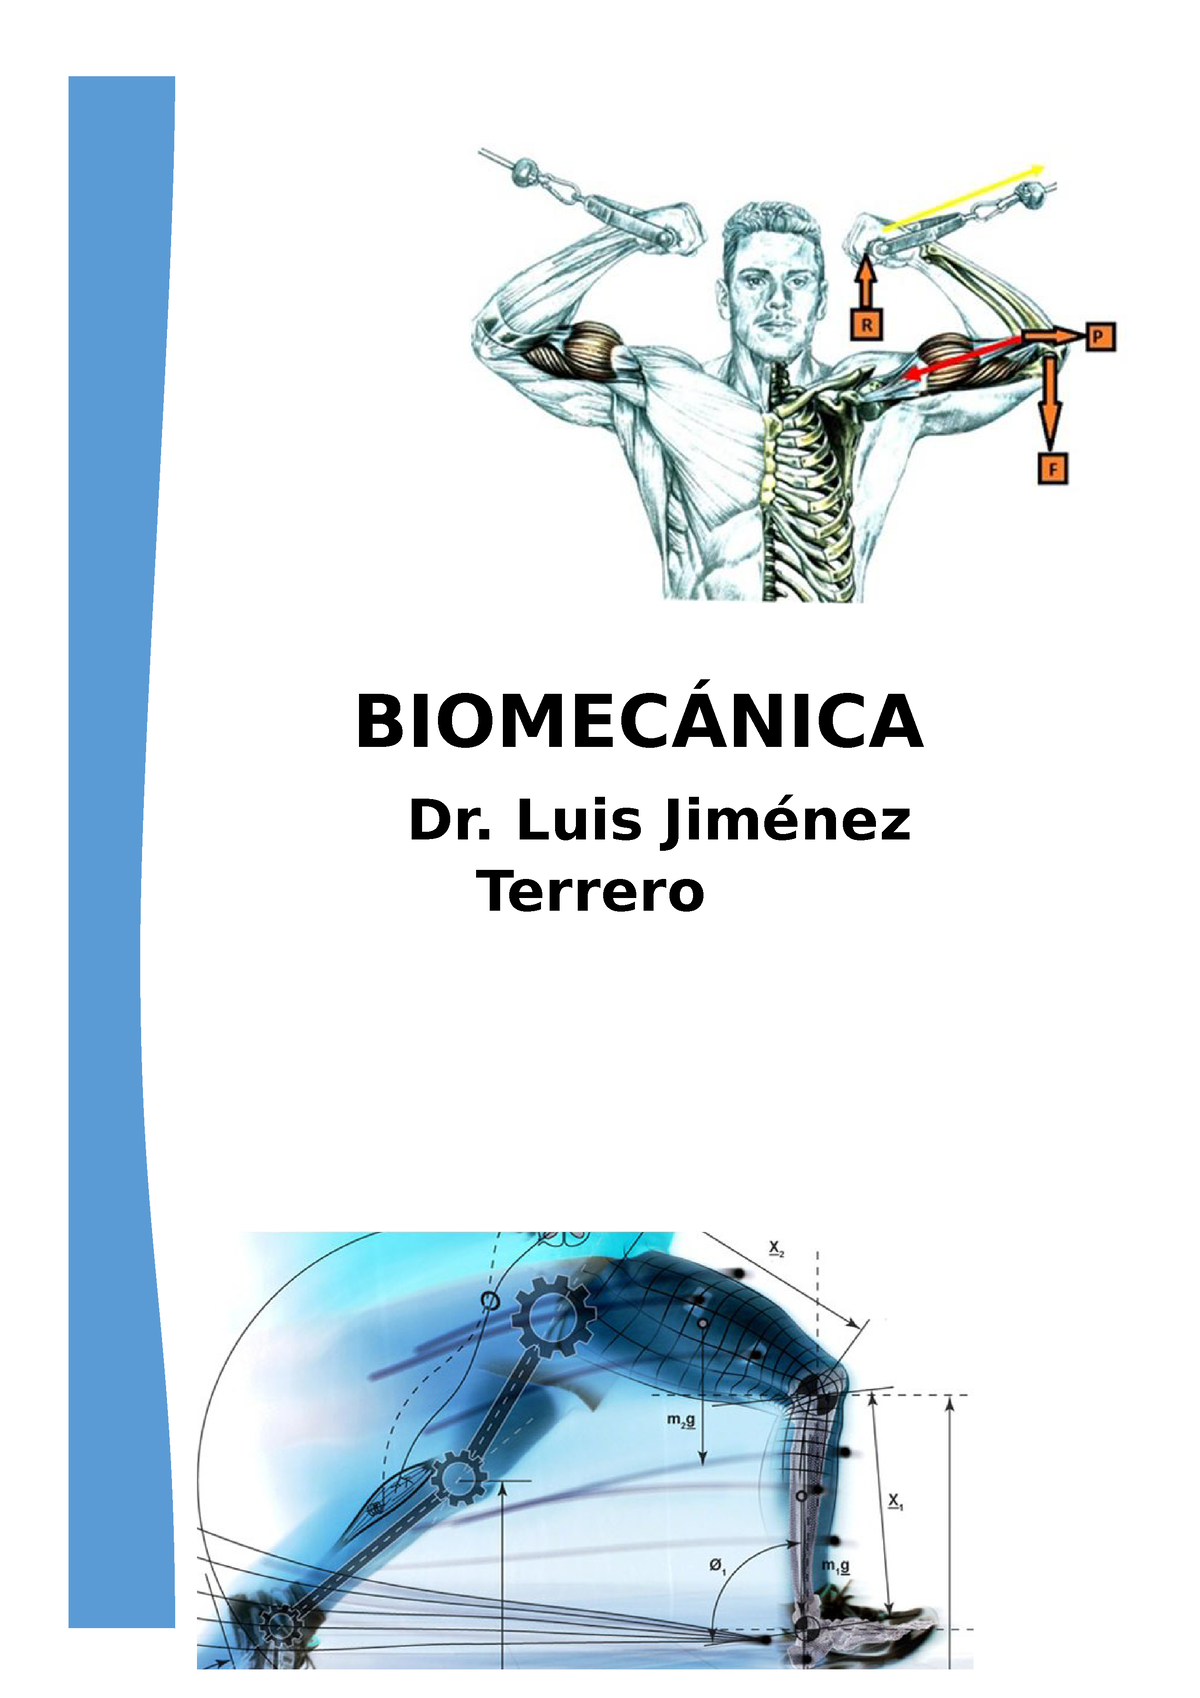 Introduccion E Historia DE LA Biomecanica. Clase 1 - BIOMECÁNICA Dr. Luis  Jiménez Terrero LA - Studocu